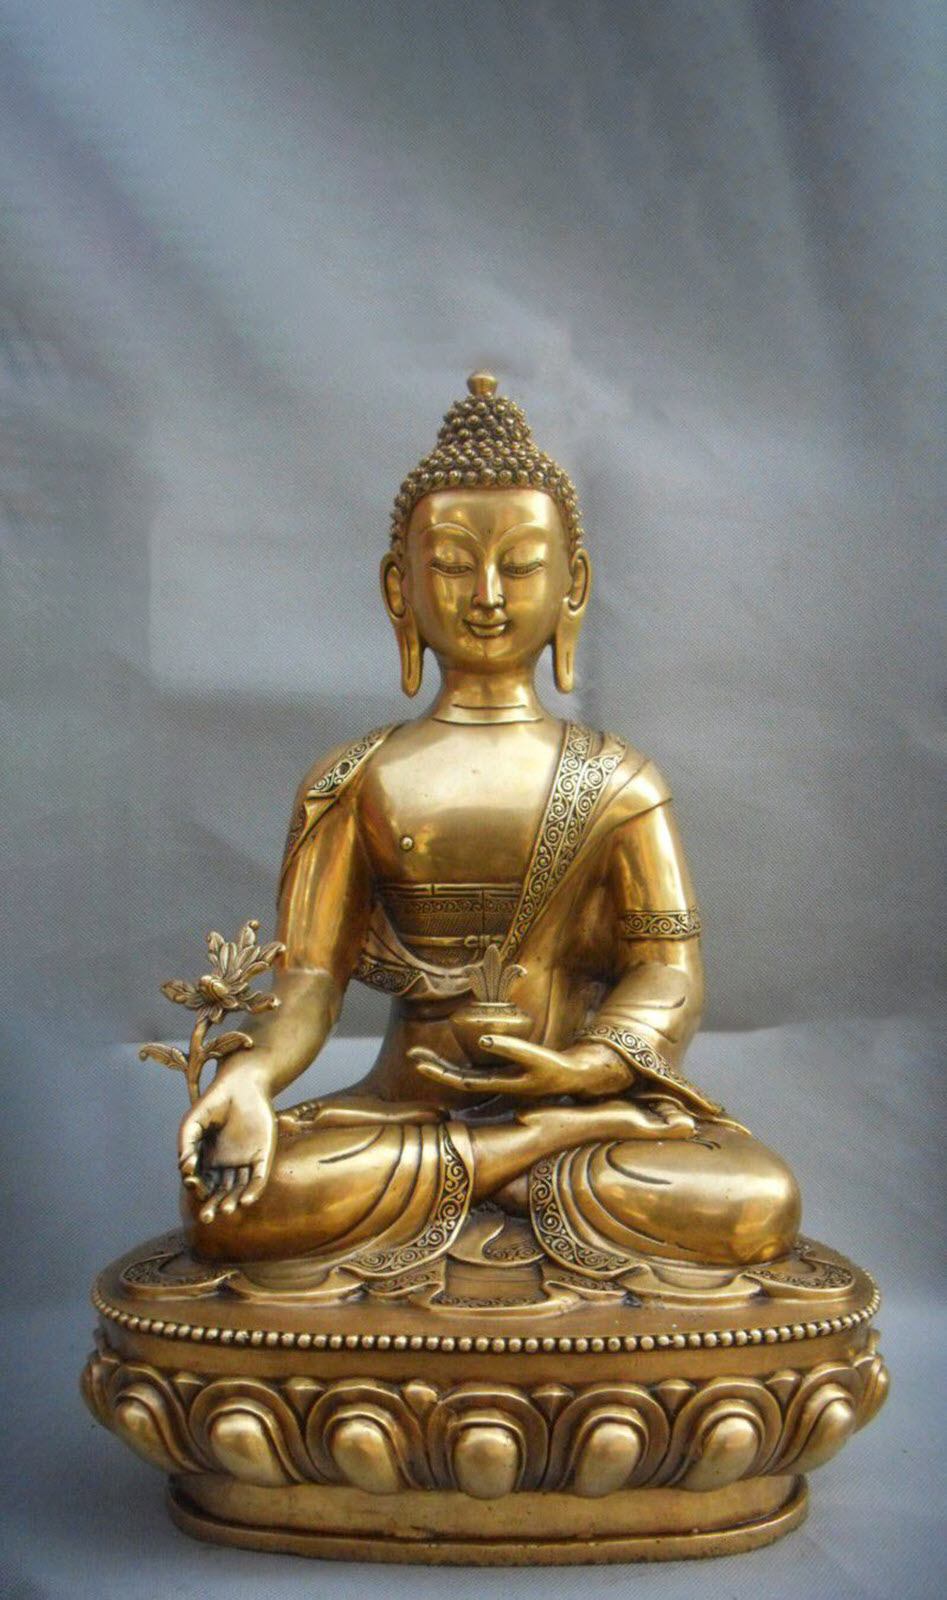 Hình nền Phật Dược Sư: Cùng thưởng lãm các hình nền lộng lẫy với chủ đề Phật Dược Sư đầy ý nghĩa. Trải nghiệm tâm hồn thanh thản trong không gian tĩnh lặng cùng những bức hình nền thật đẹp mắt.